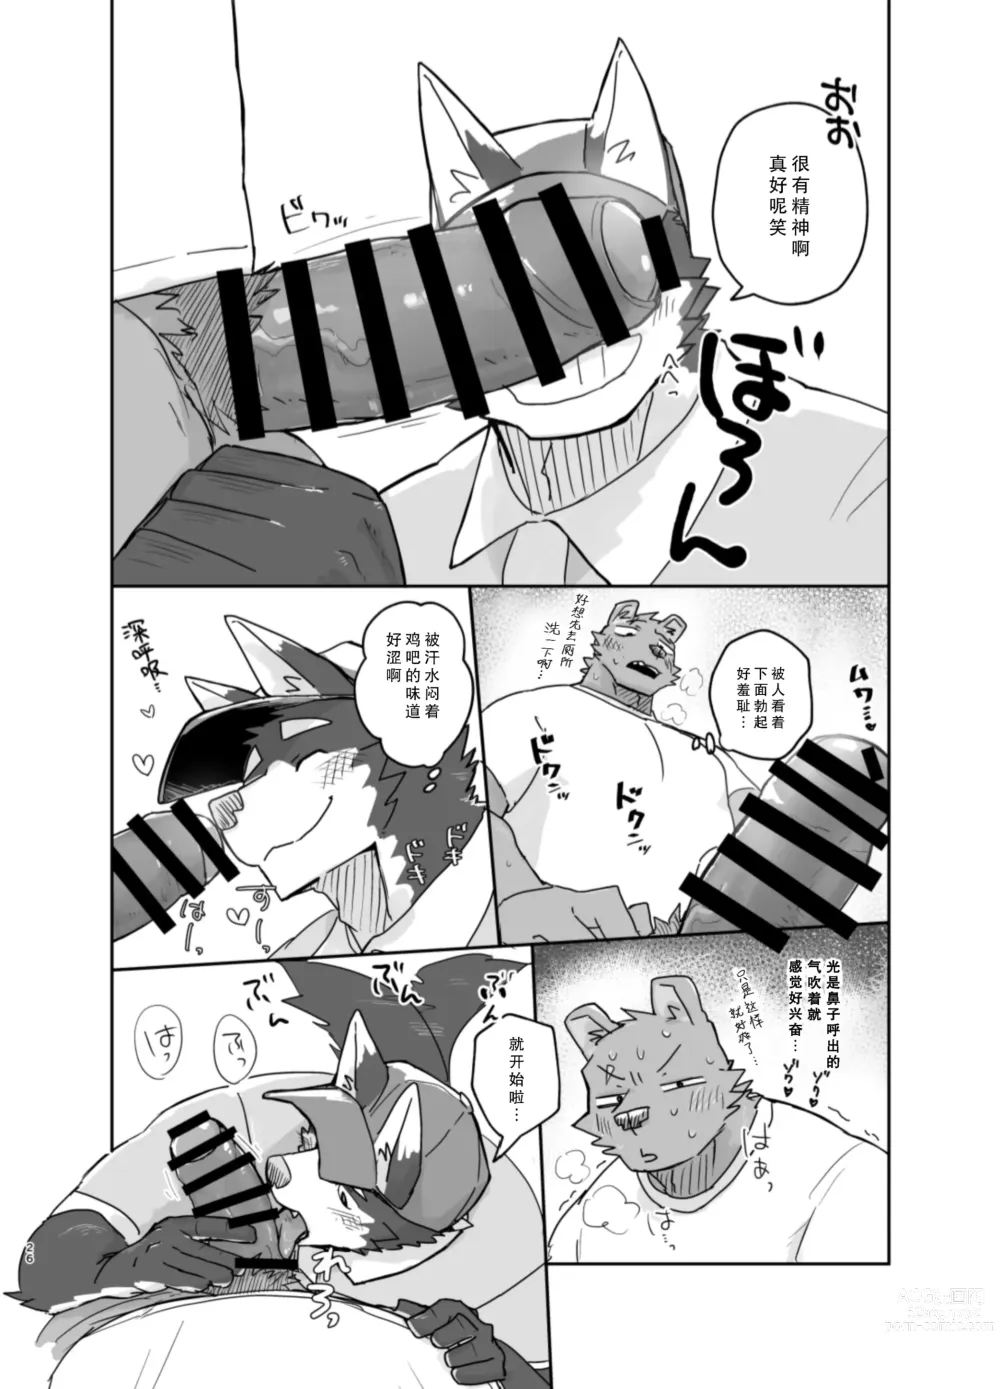 Page 26 of doujinshi 搬家的十分钟服务